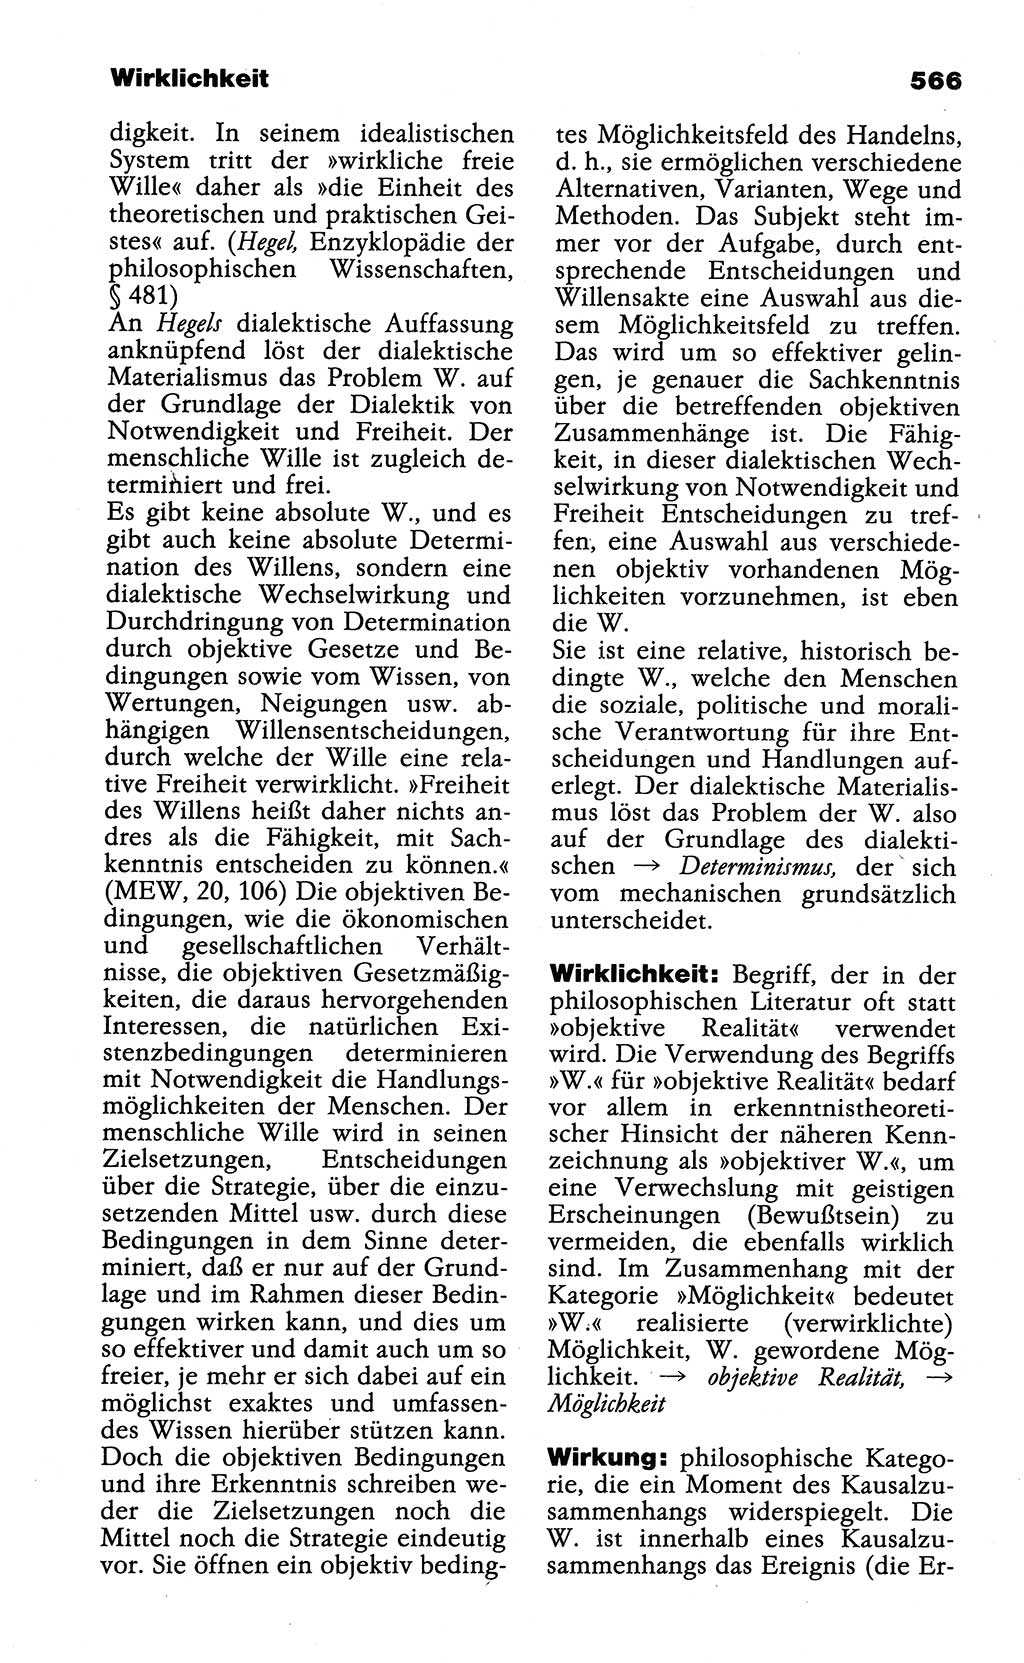 Wörterbuch der marxistisch-leninistischen Philosophie [Deutsche Demokratische Republik (DDR)] 1985, Seite 566 (Wb. ML Phil. DDR 1985, S. 566)